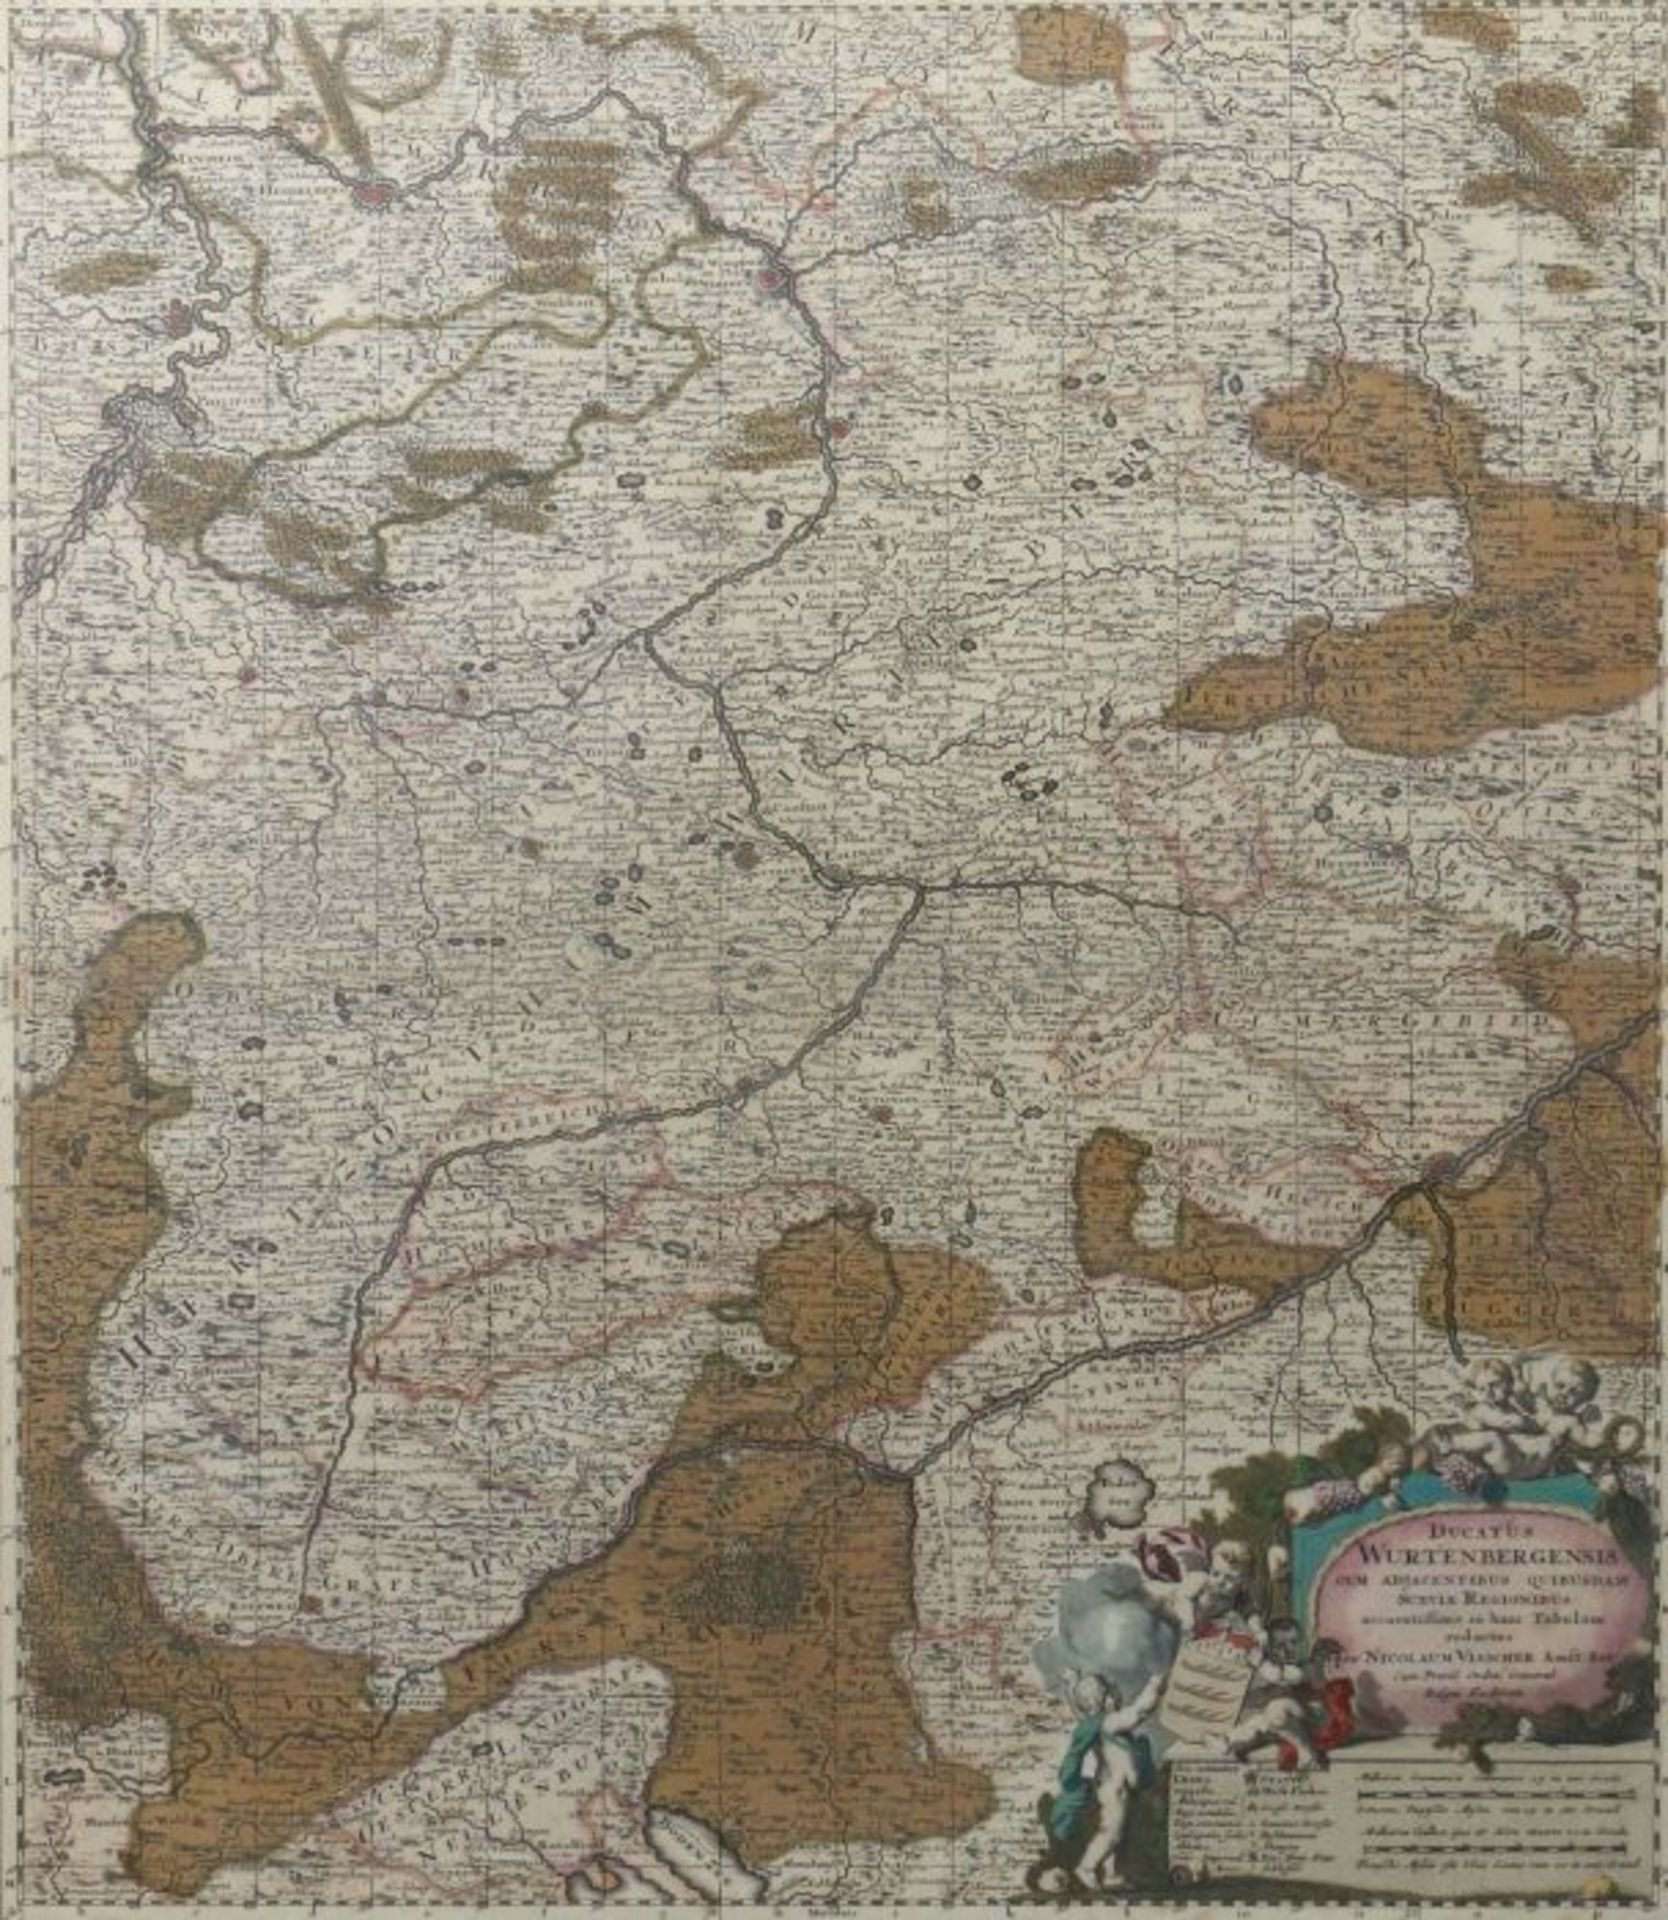 Visscher, Nicolas Amsterdam 1649 - 1702 ebd., niederländischer Kupferstecher, Kartograf und